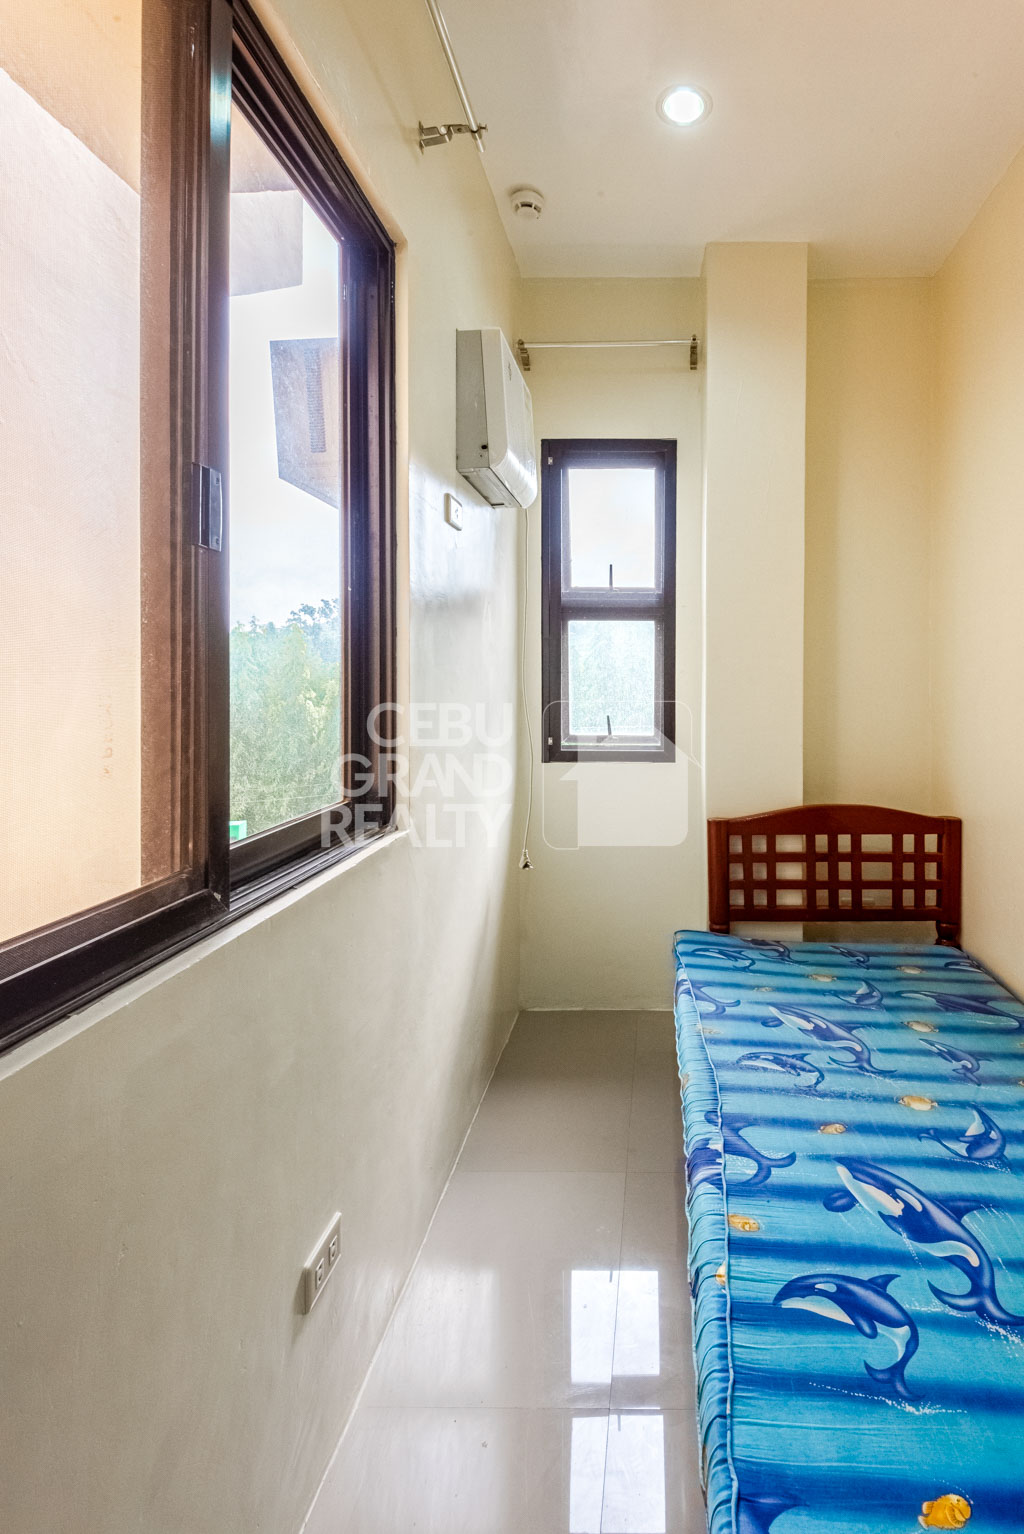 RHSJ2 Semi-Furnished 3 Bedroom Duplex for Rent in Talamban - 12